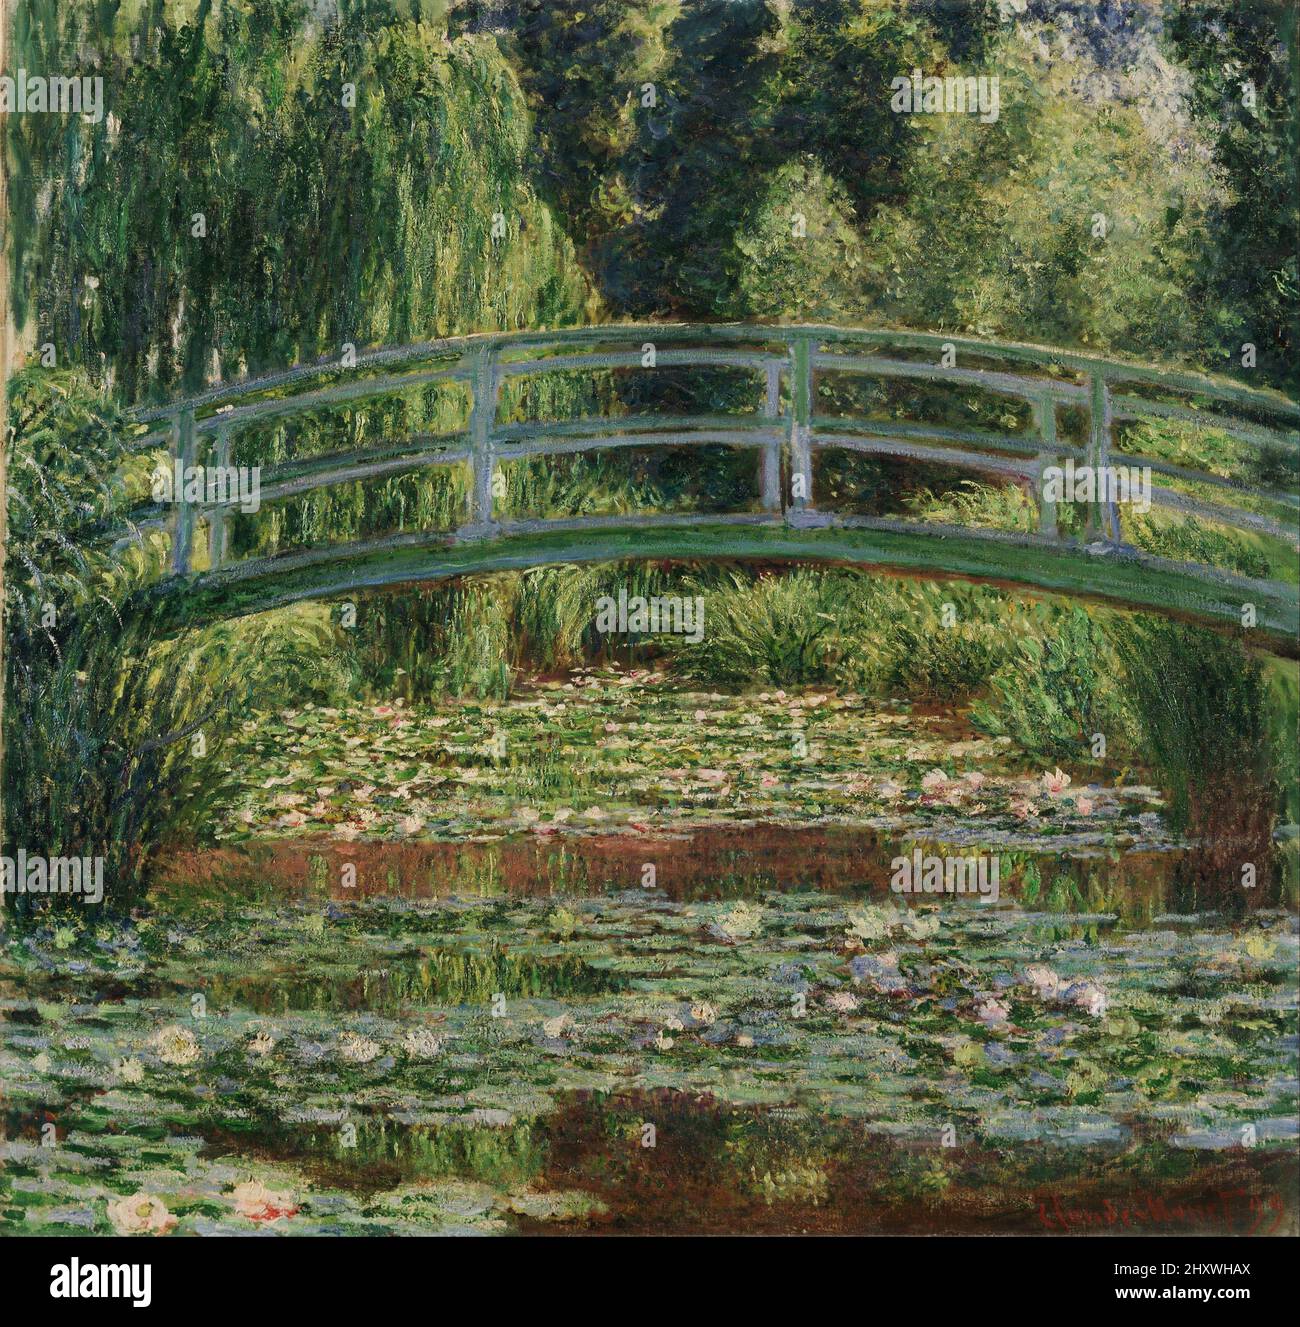 La passerelle japonaise et la piscine de nénuphars Giverny huile sur toile de l'impressionniste Claude Monet créée en 1899 Banque D'Images